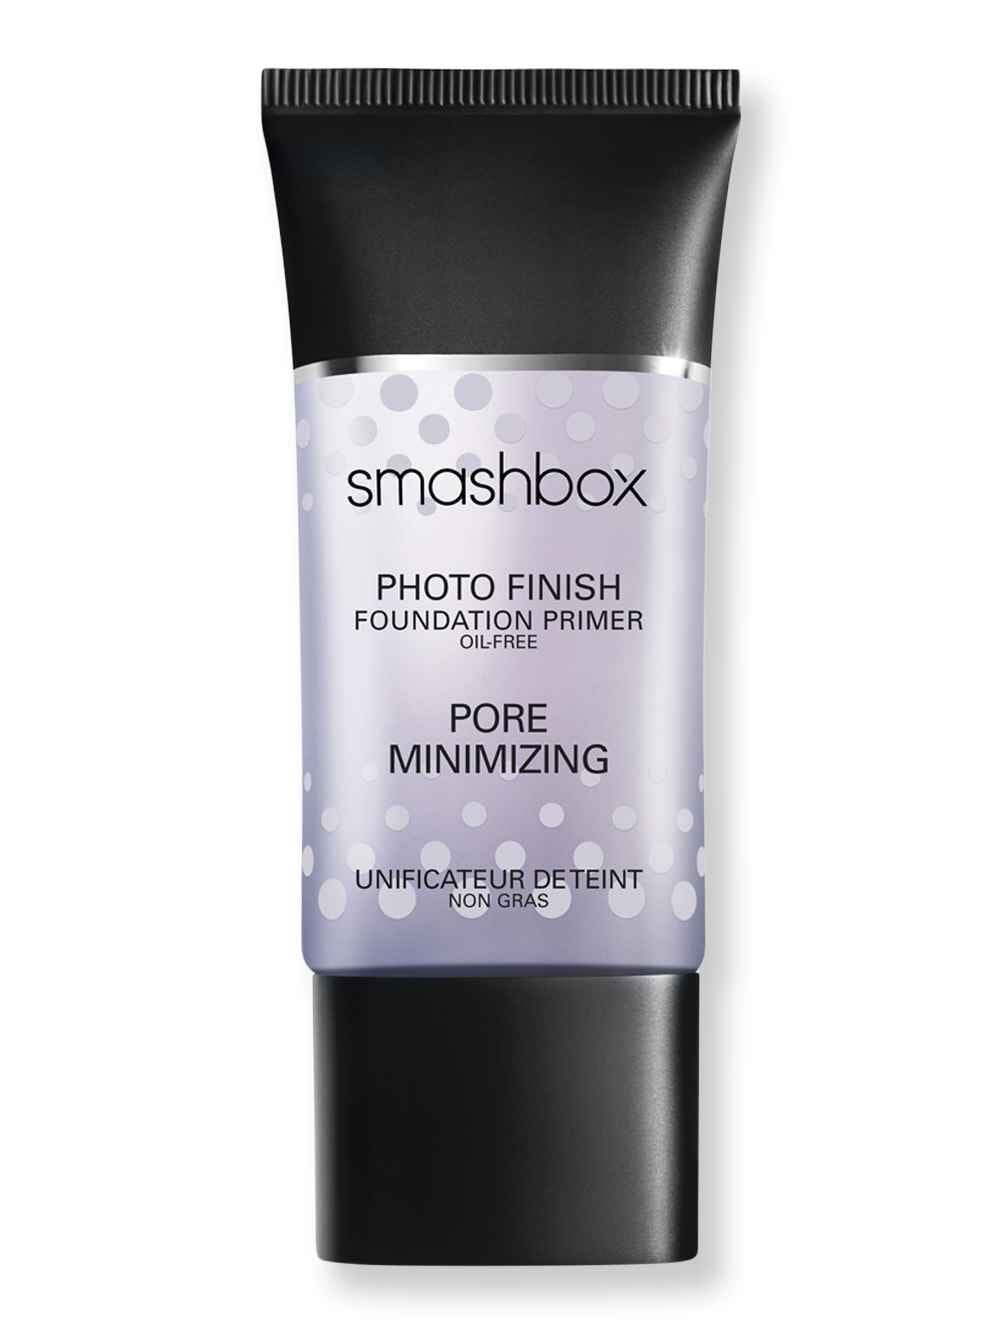 Review: Smashbox Photo Pore Minimizing foundation primer